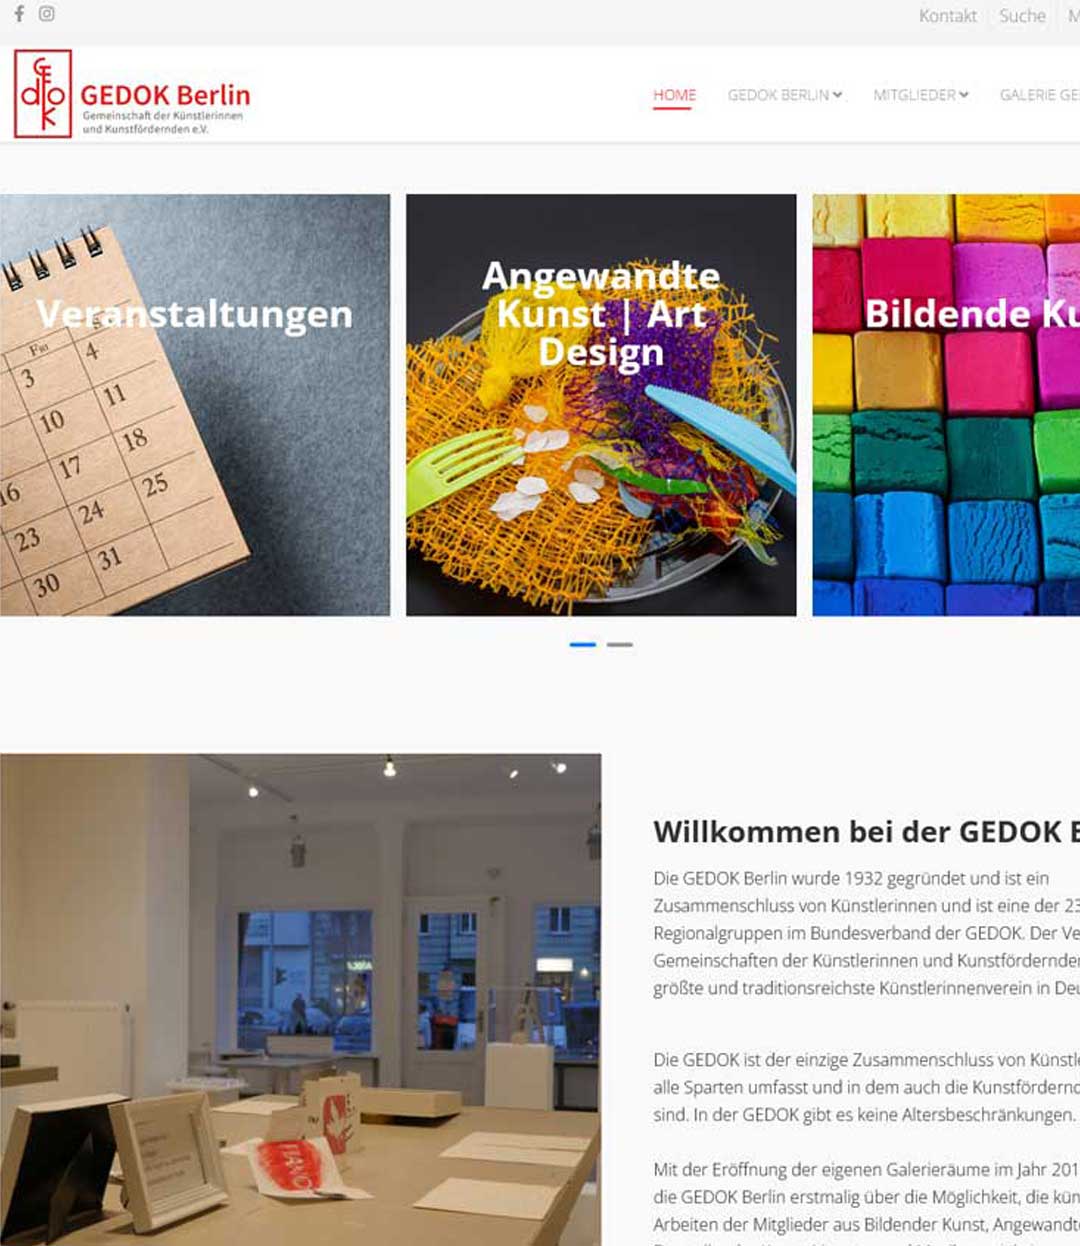  GEDOK berlin hat eine neue Webseite- bei klick geht es zur Webseite